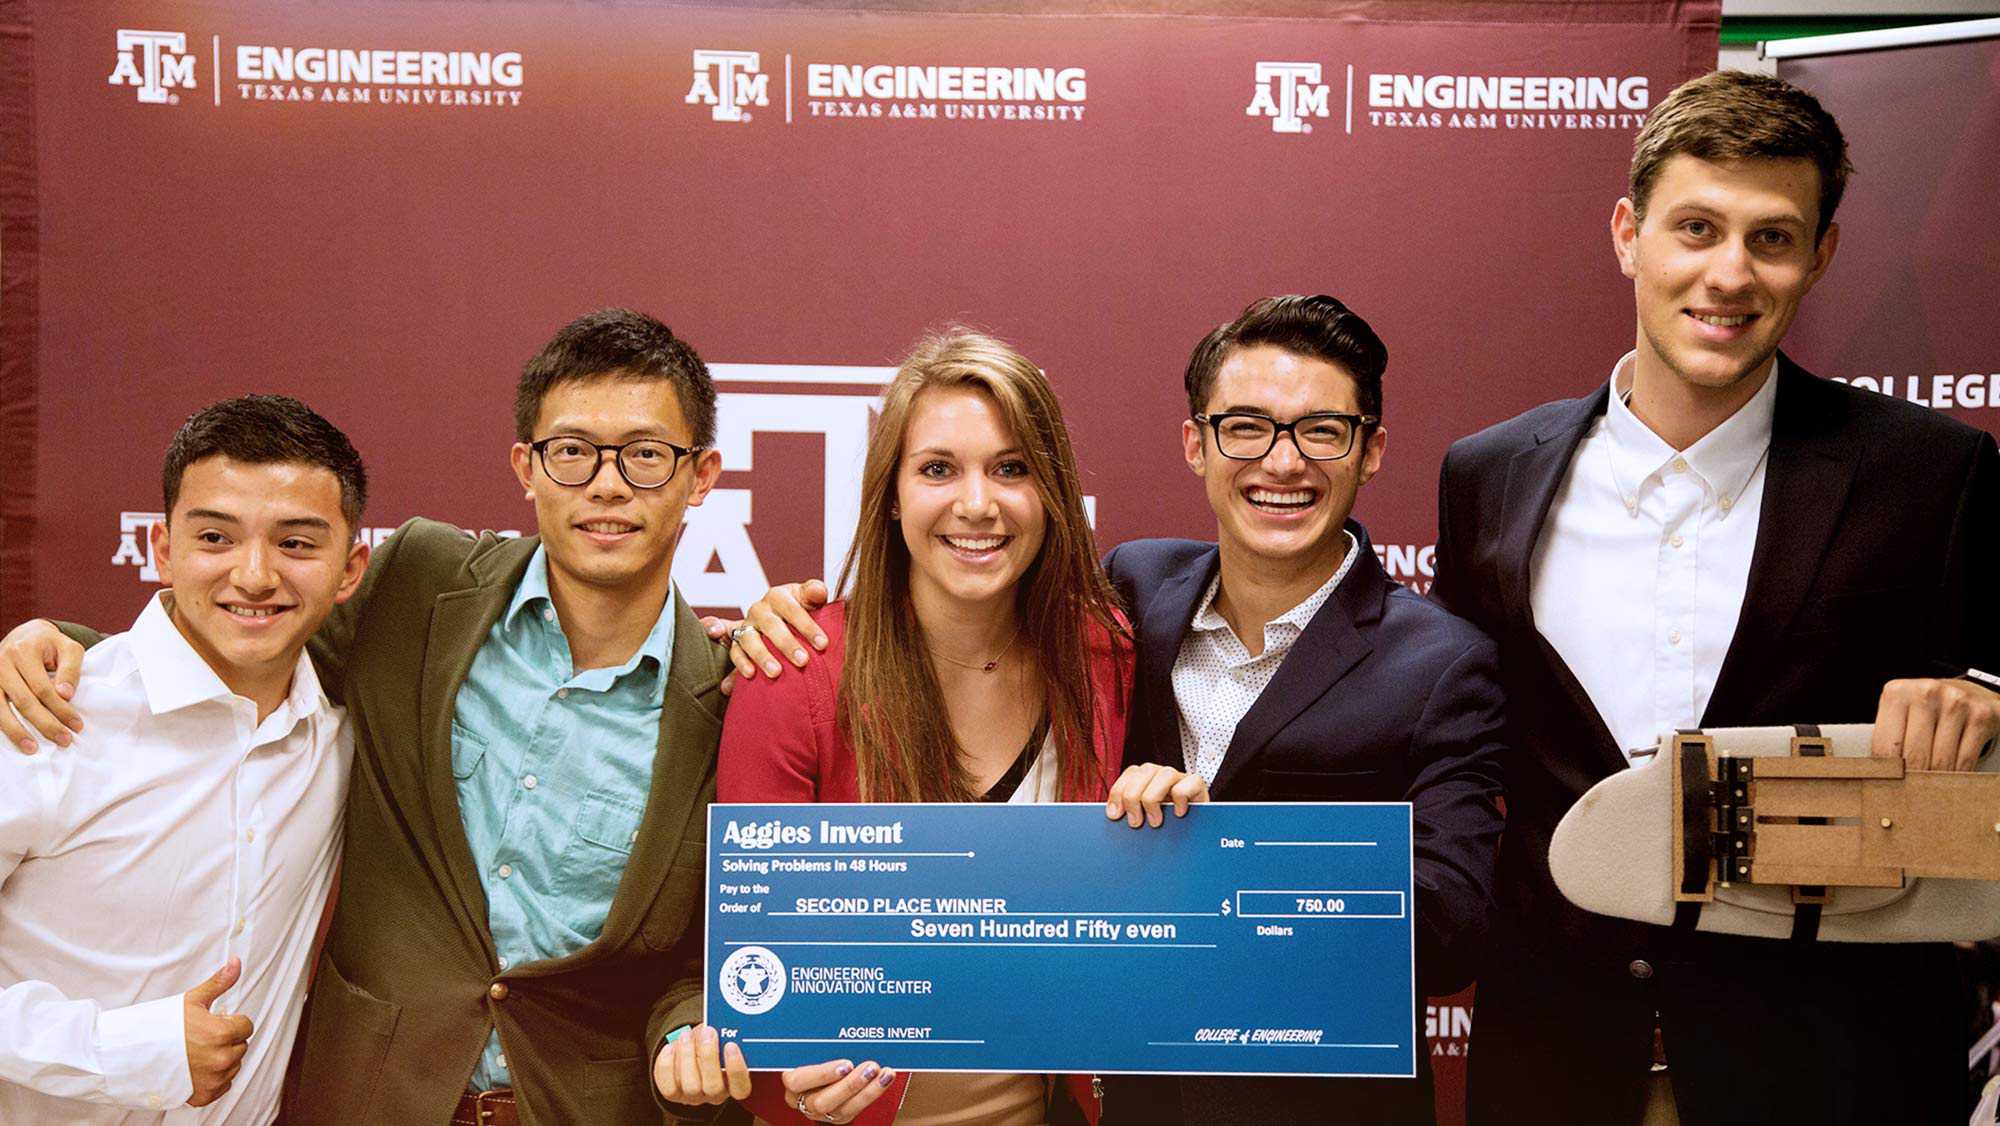 德克萨斯A&；M大学工程系的5名学生相互牵手，肩上扛着他们的项目和支票，在48小时内发明解决问题，支付给第二名优胜者七百五十美元甚至工程创新中心。